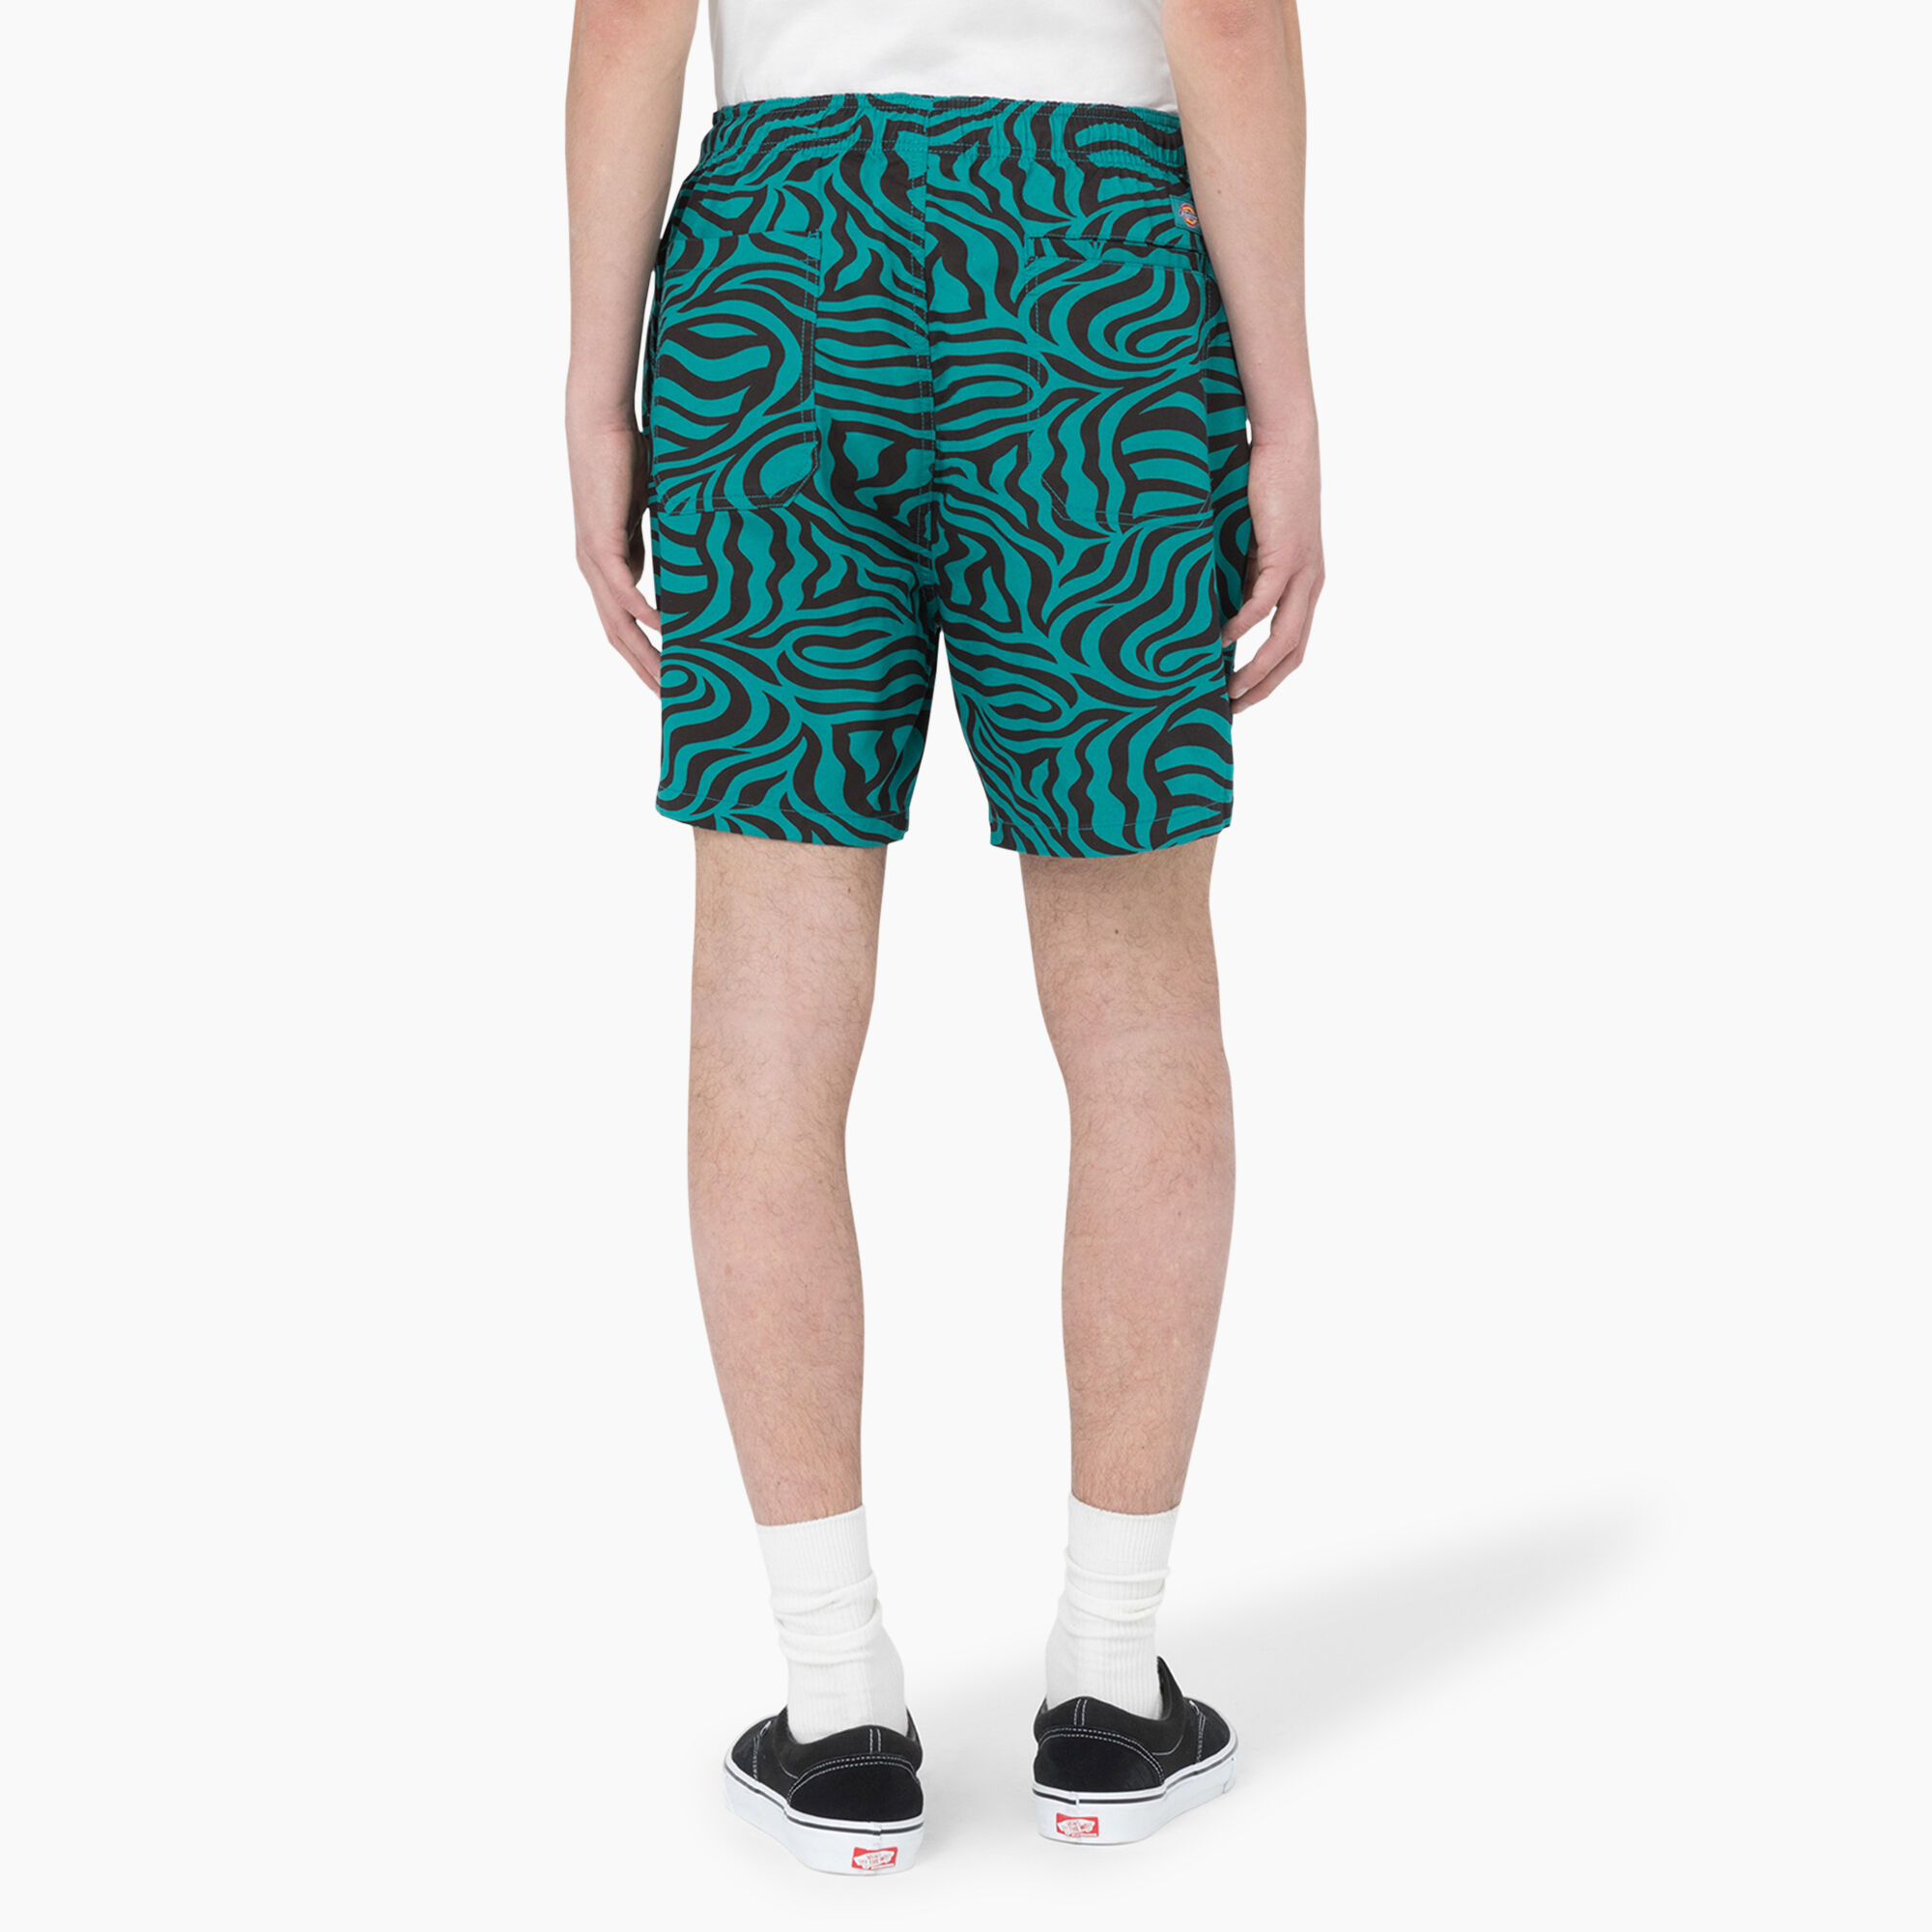 Zebra Print Drawstring Shorts, 6